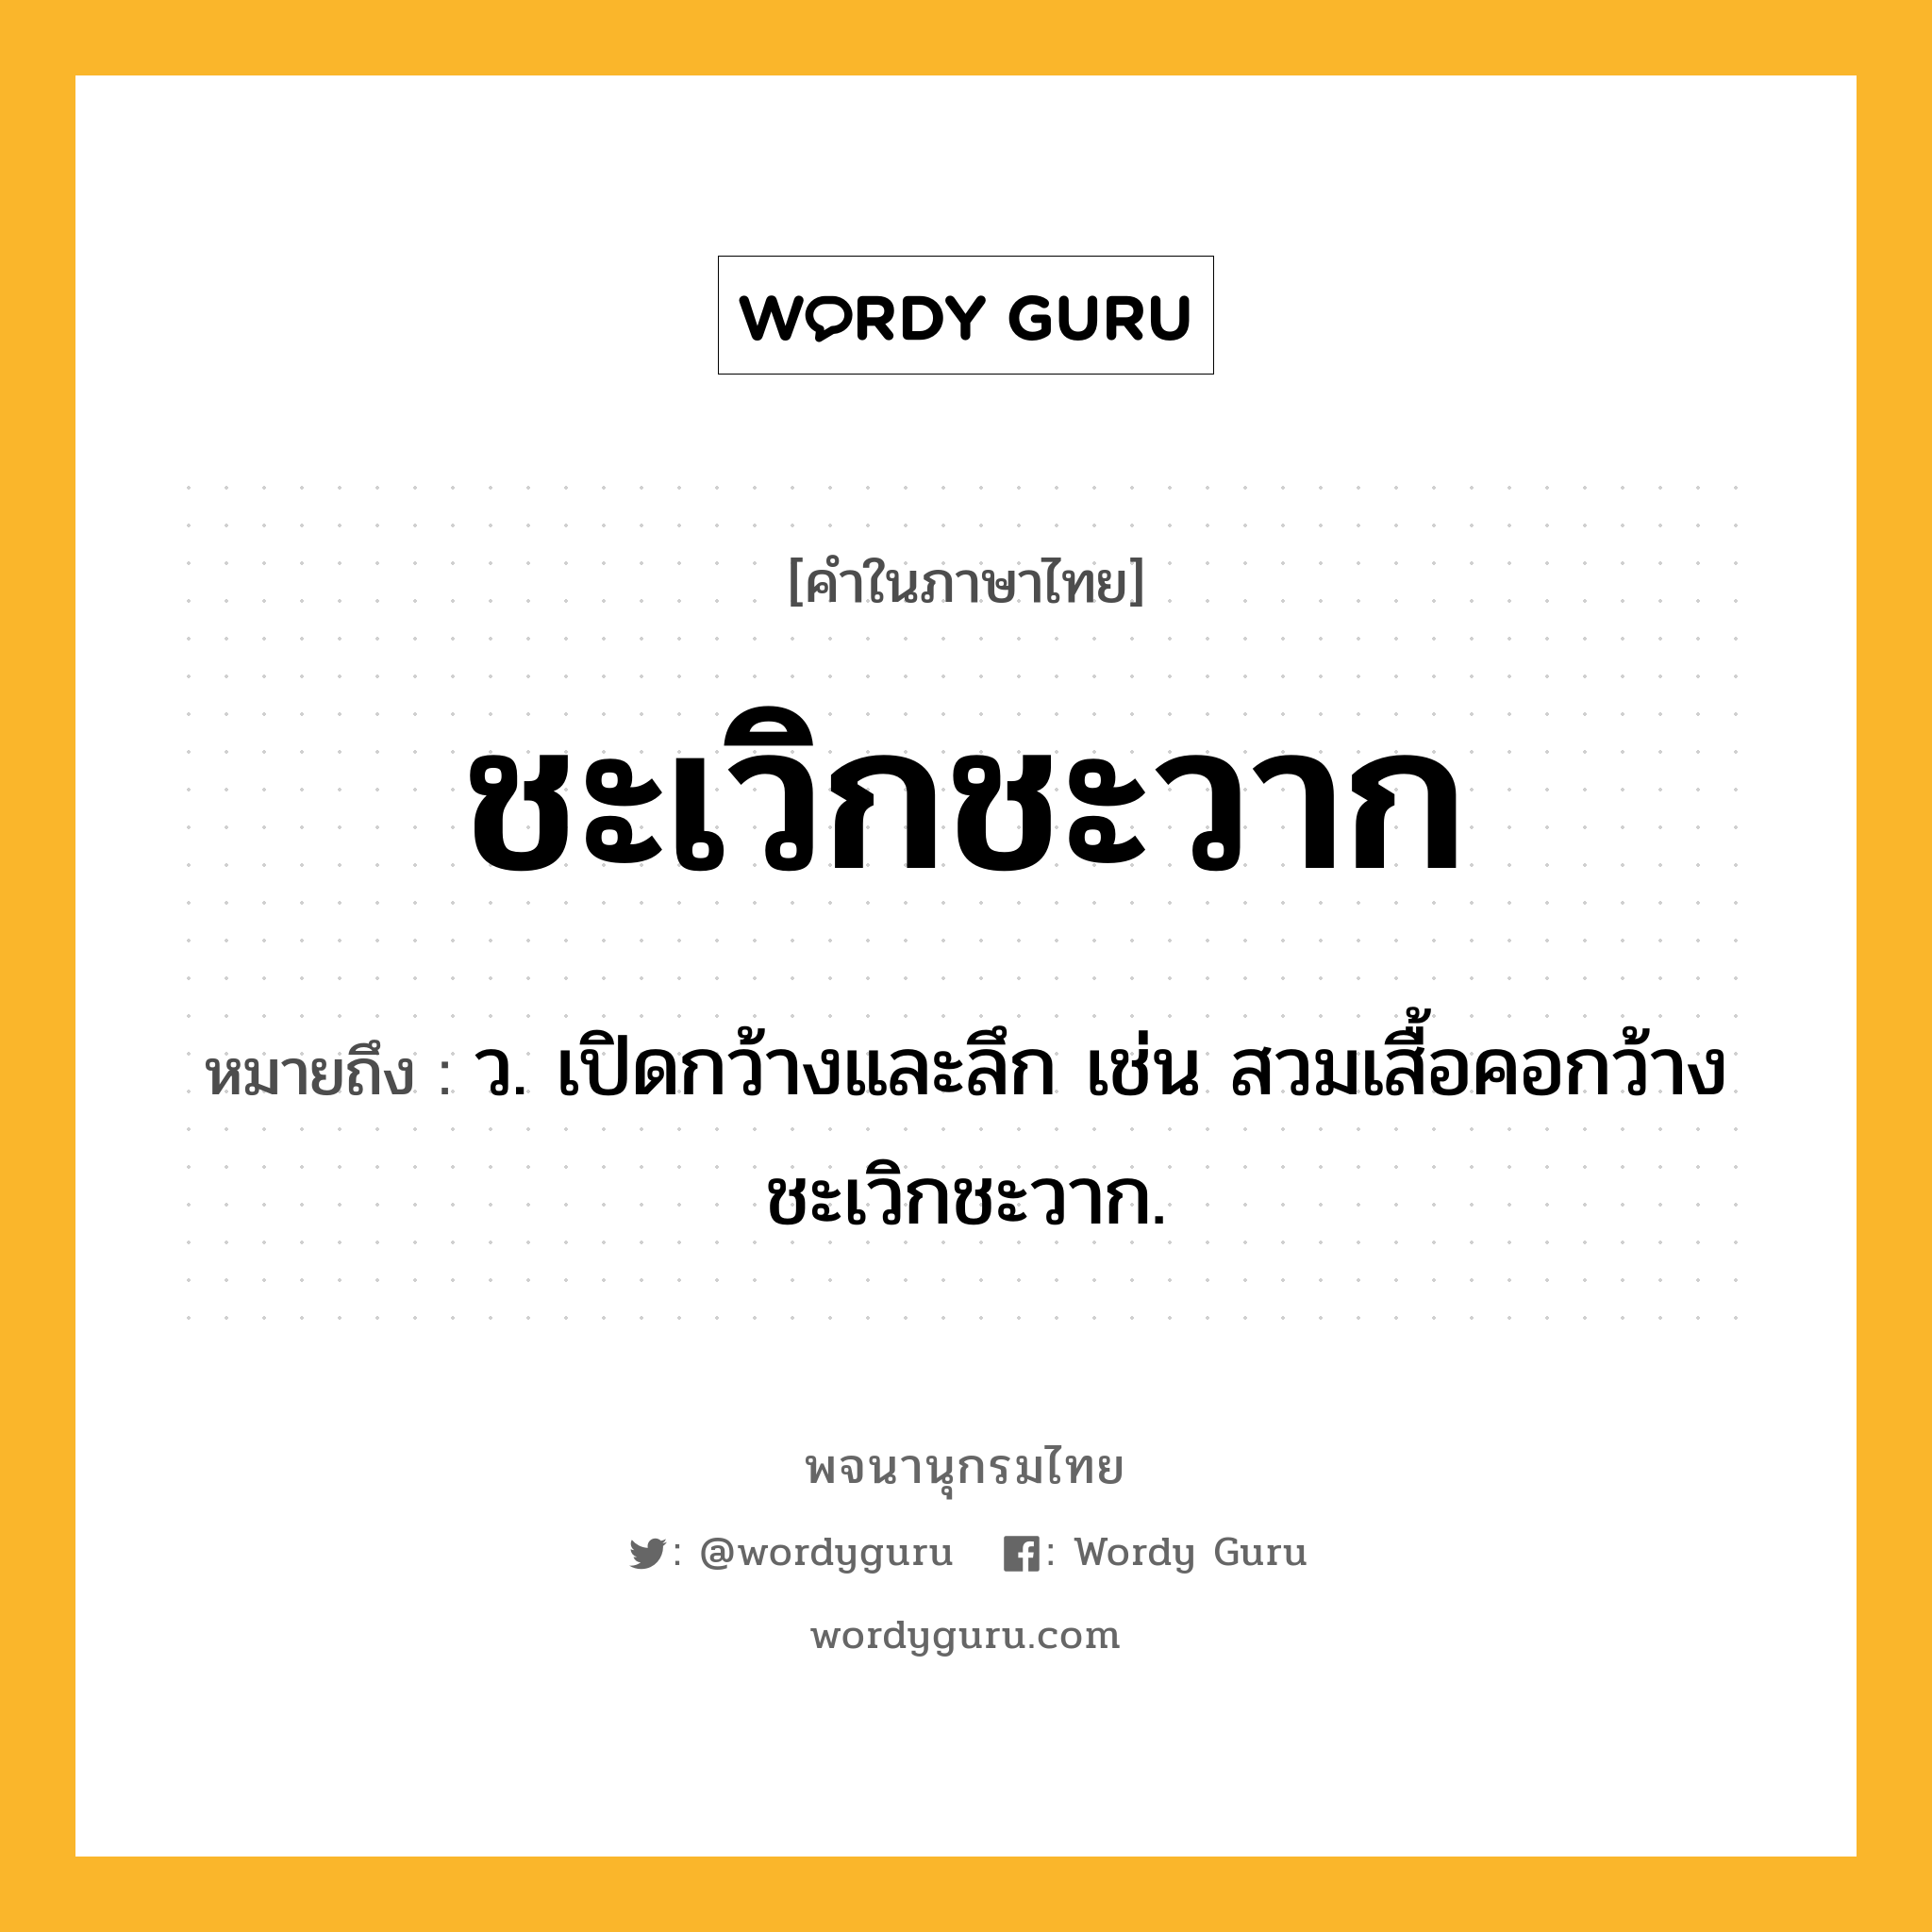 ชะเวิกชะวาก ความหมาย หมายถึงอะไร?, คำในภาษาไทย ชะเวิกชะวาก หมายถึง ว. เปิดกว้างและลึก เช่น สวมเสื้อคอกว้างชะเวิกชะวาก.